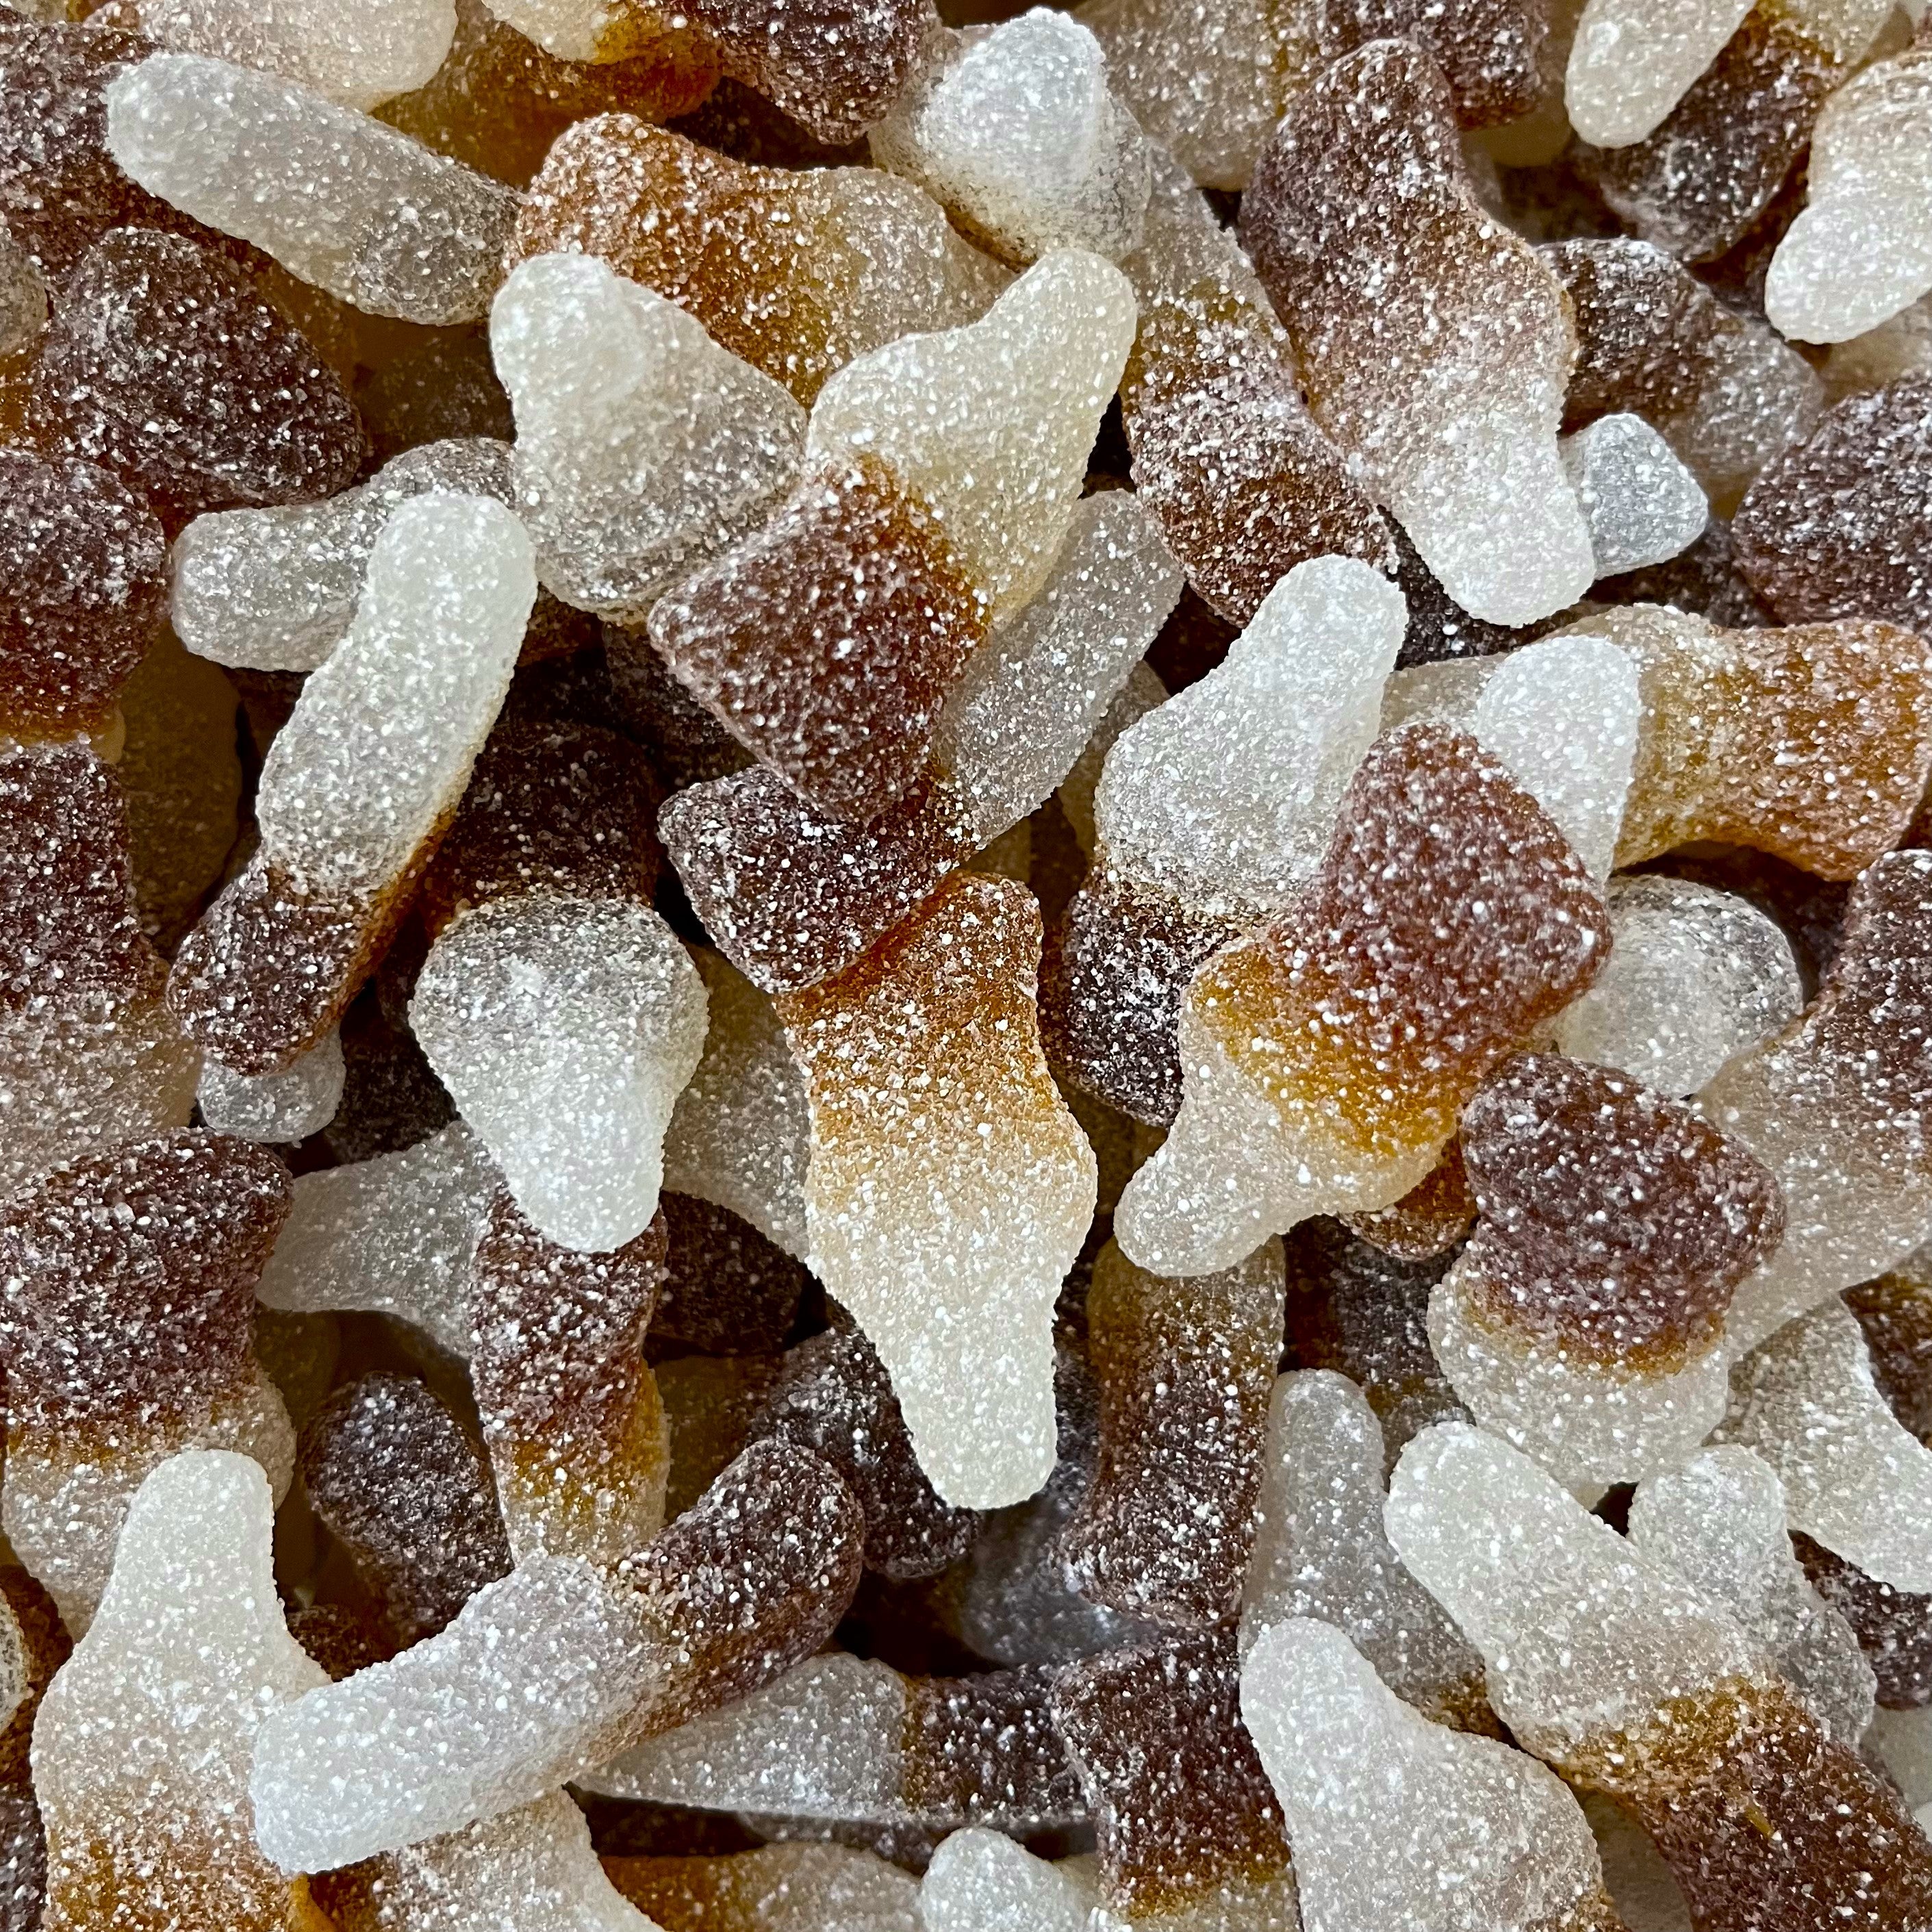 ZeConfiserie - Confiserie en ligne : Bonbons en vrac, bonbons